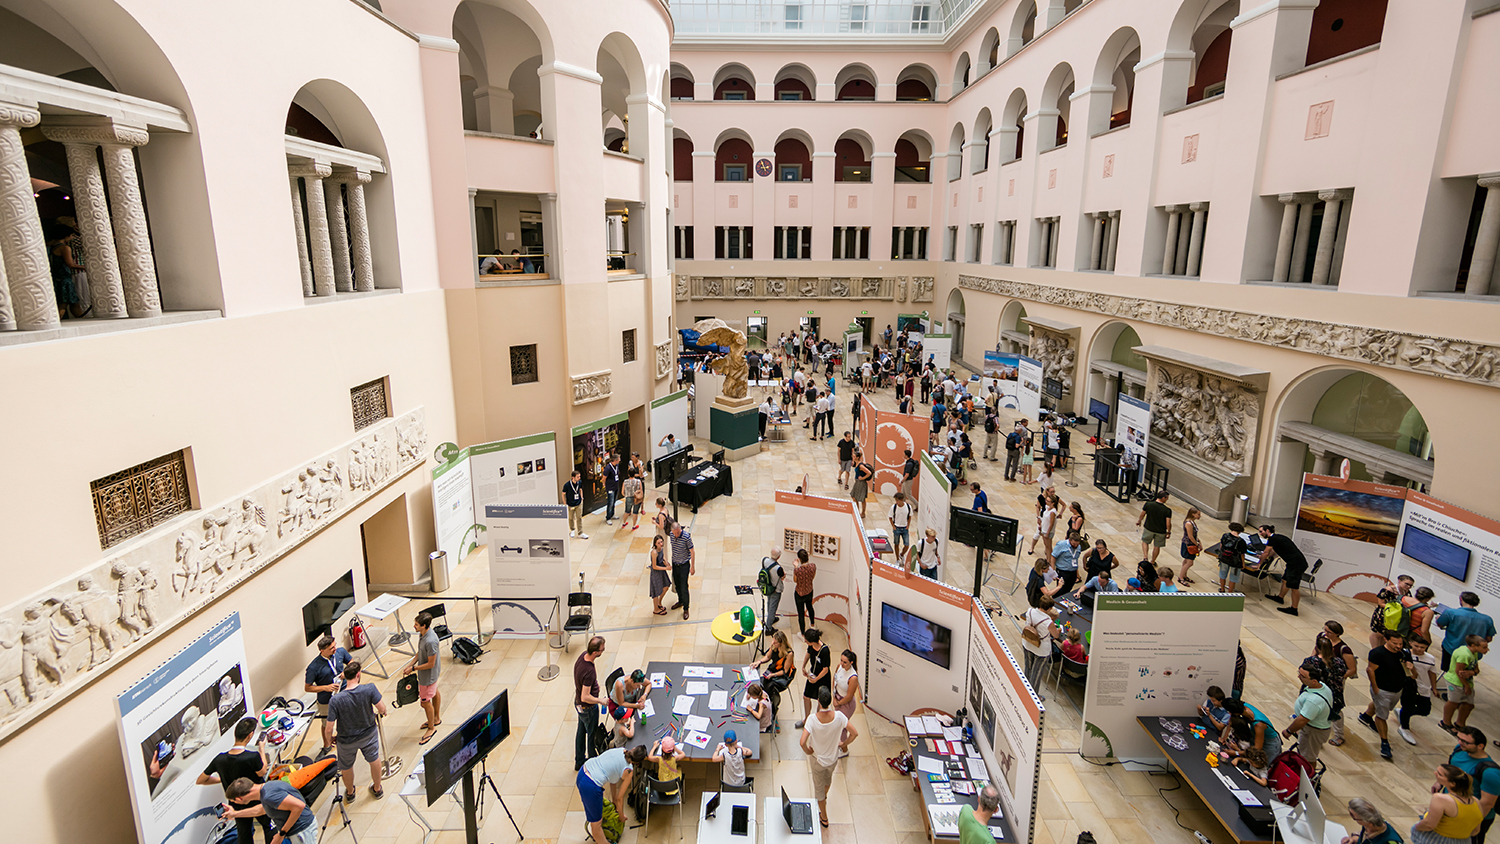 The exhibition in the atrium of the UZH was well attended. (Picture: Della Bella / Scientifica)